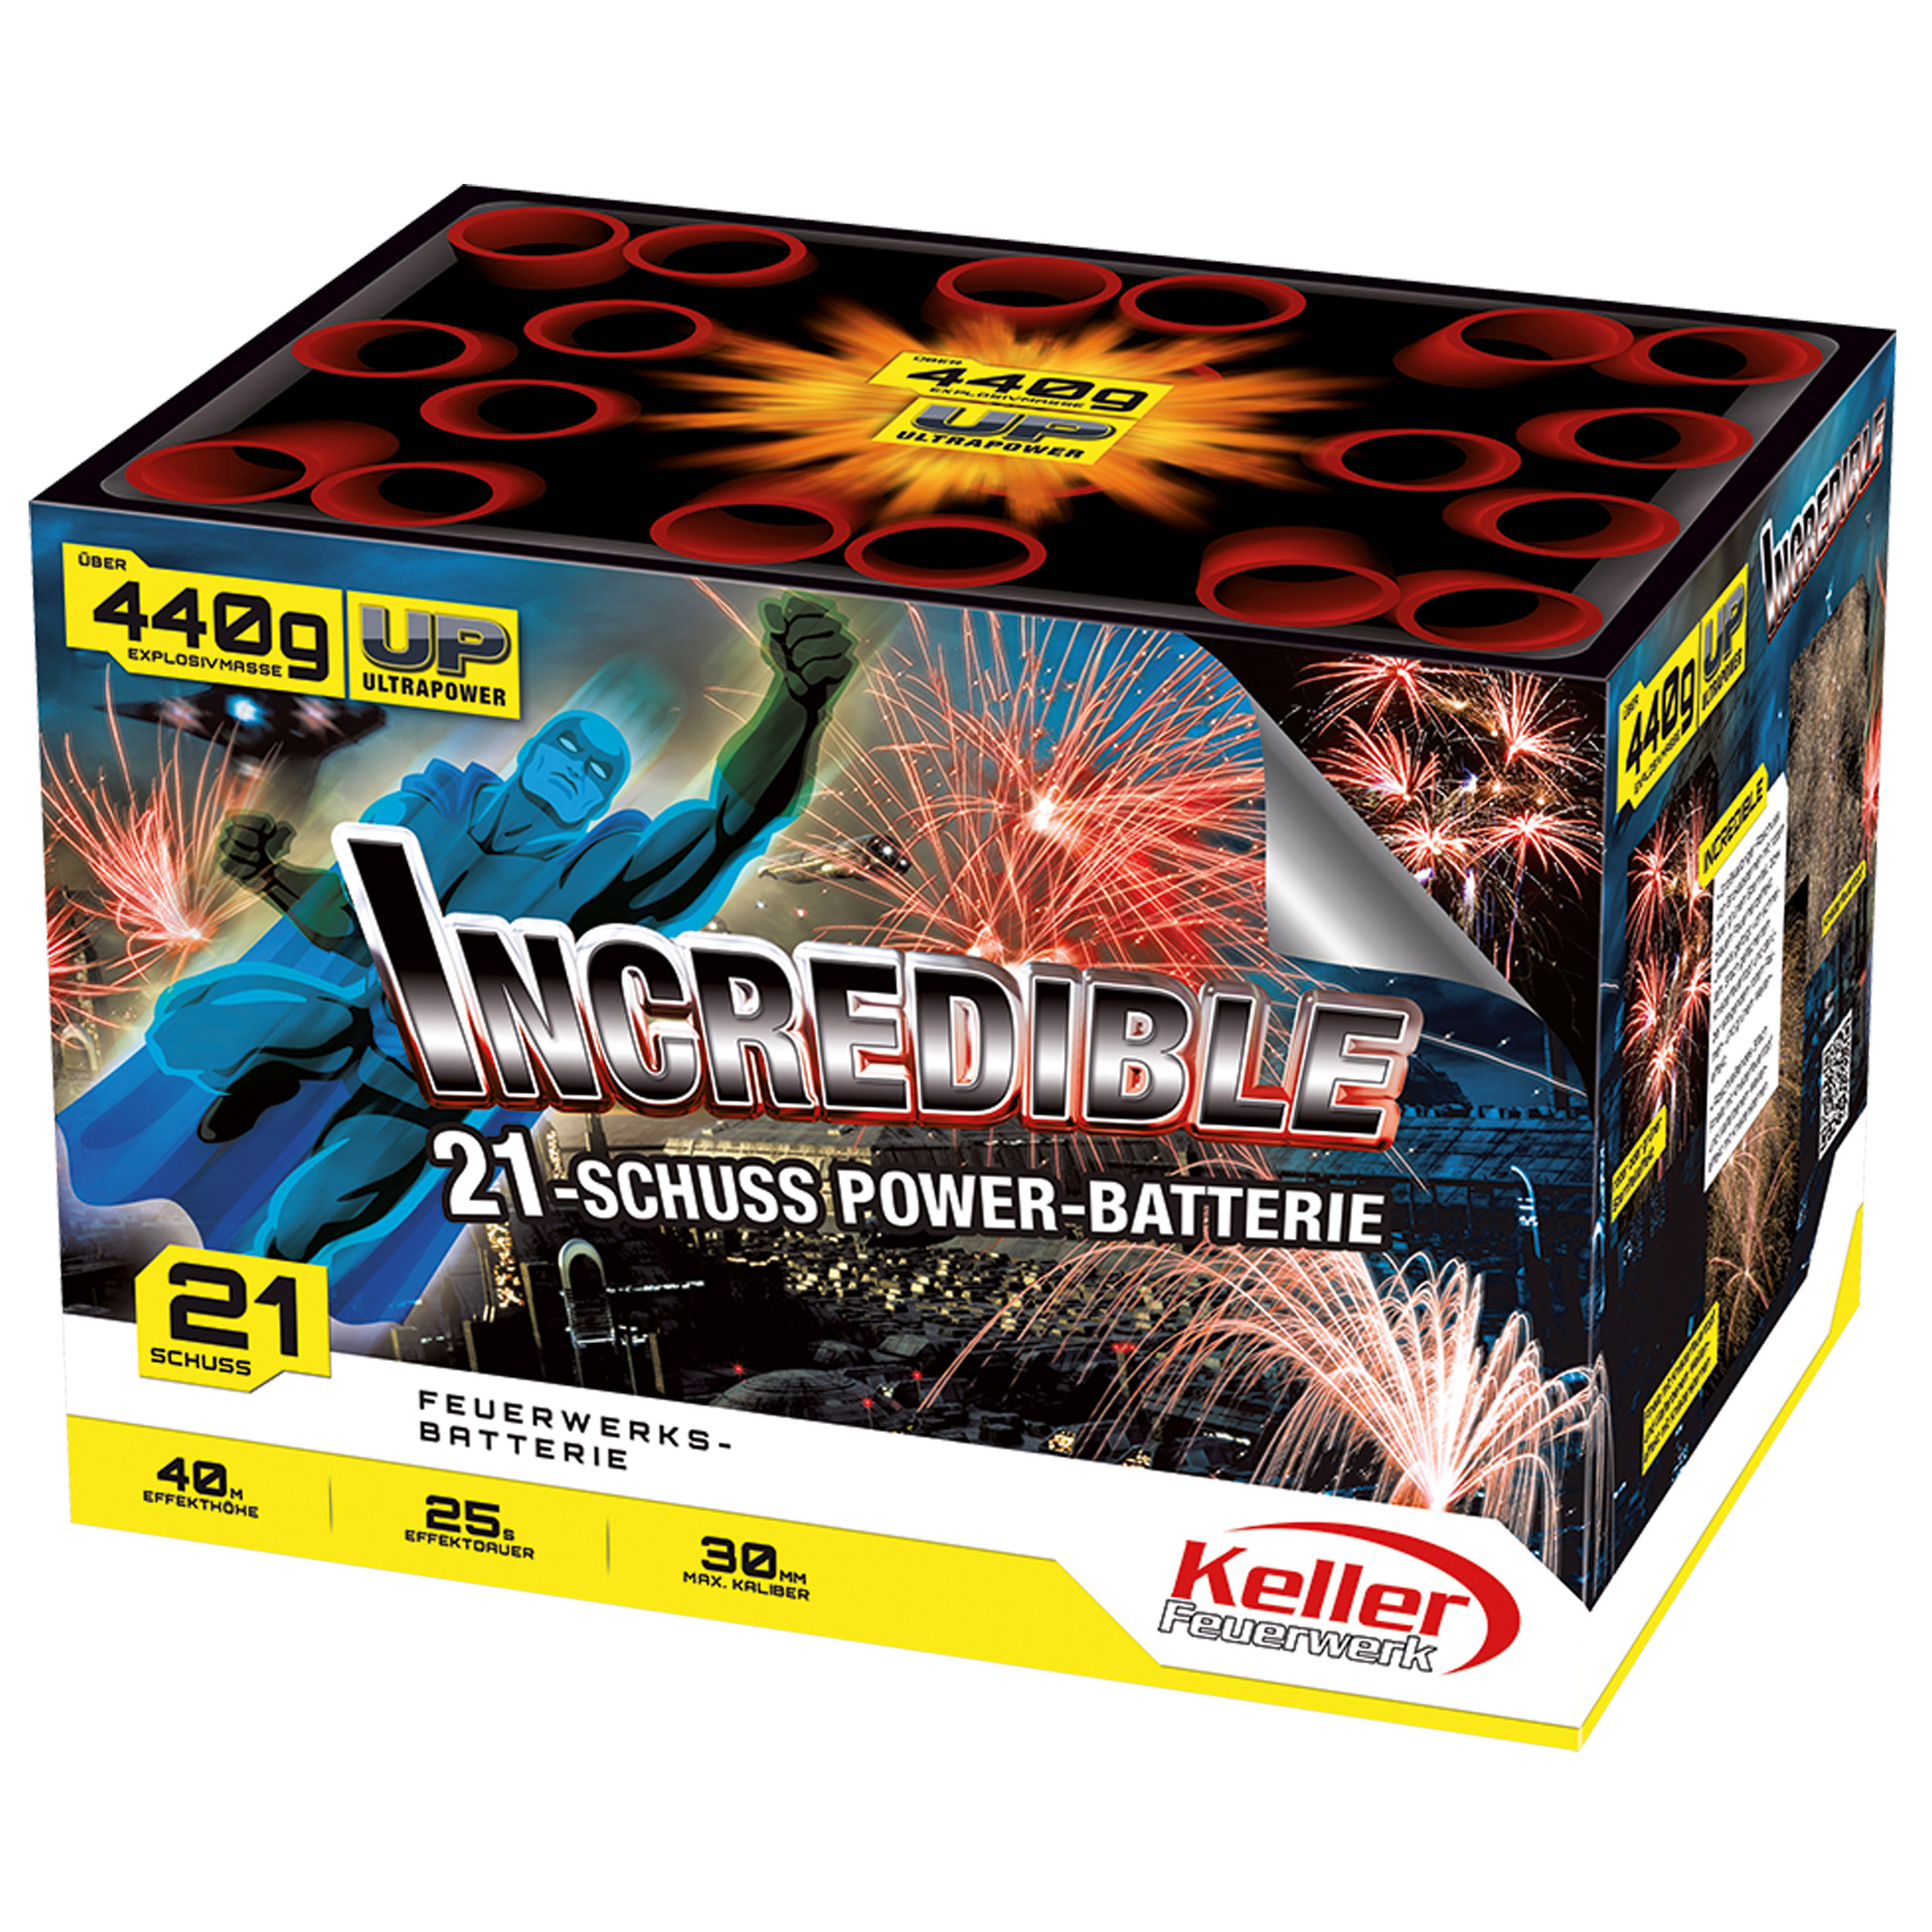 Feuerwerks-Batterie 'Incredible'